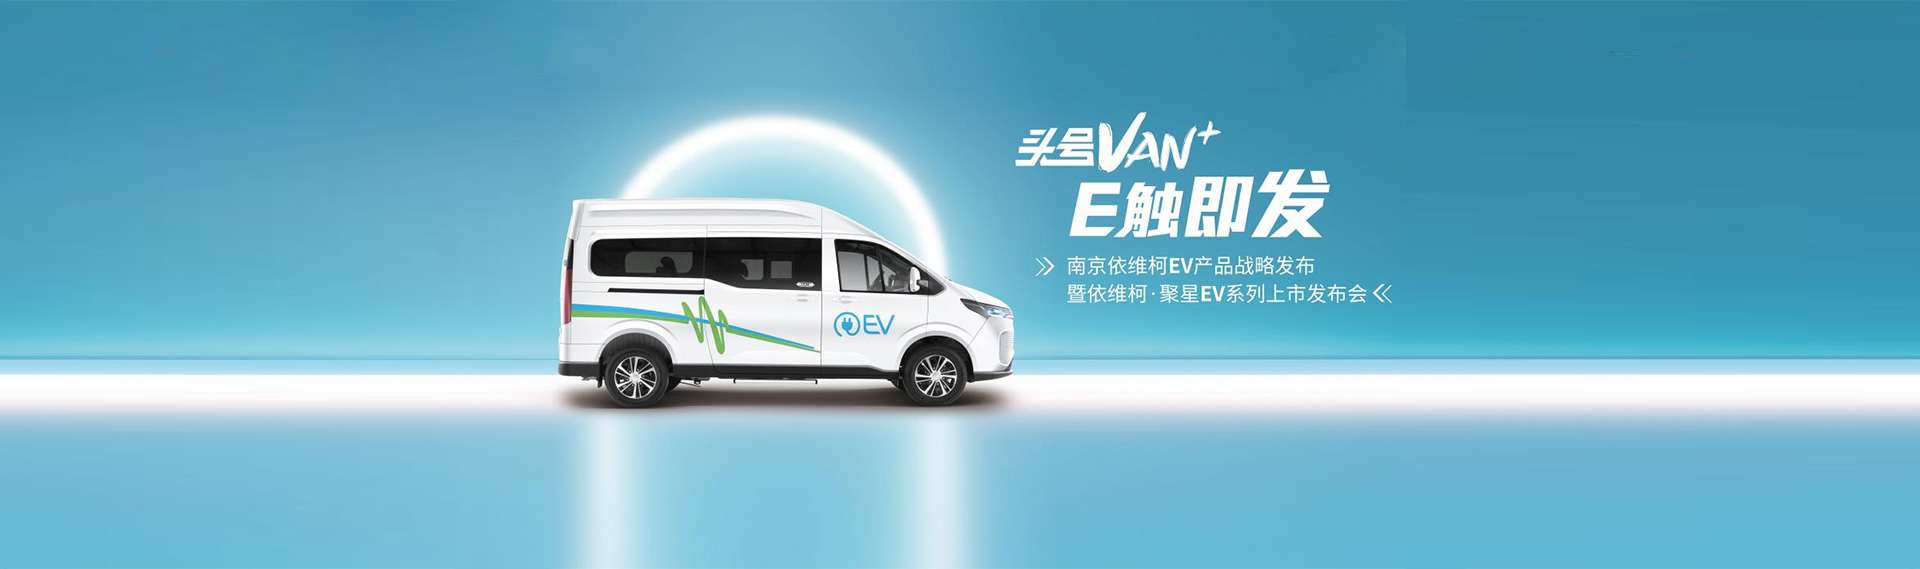 南京依维柯EV产品战略发布暨依维柯·聚星EV系列上市发布会